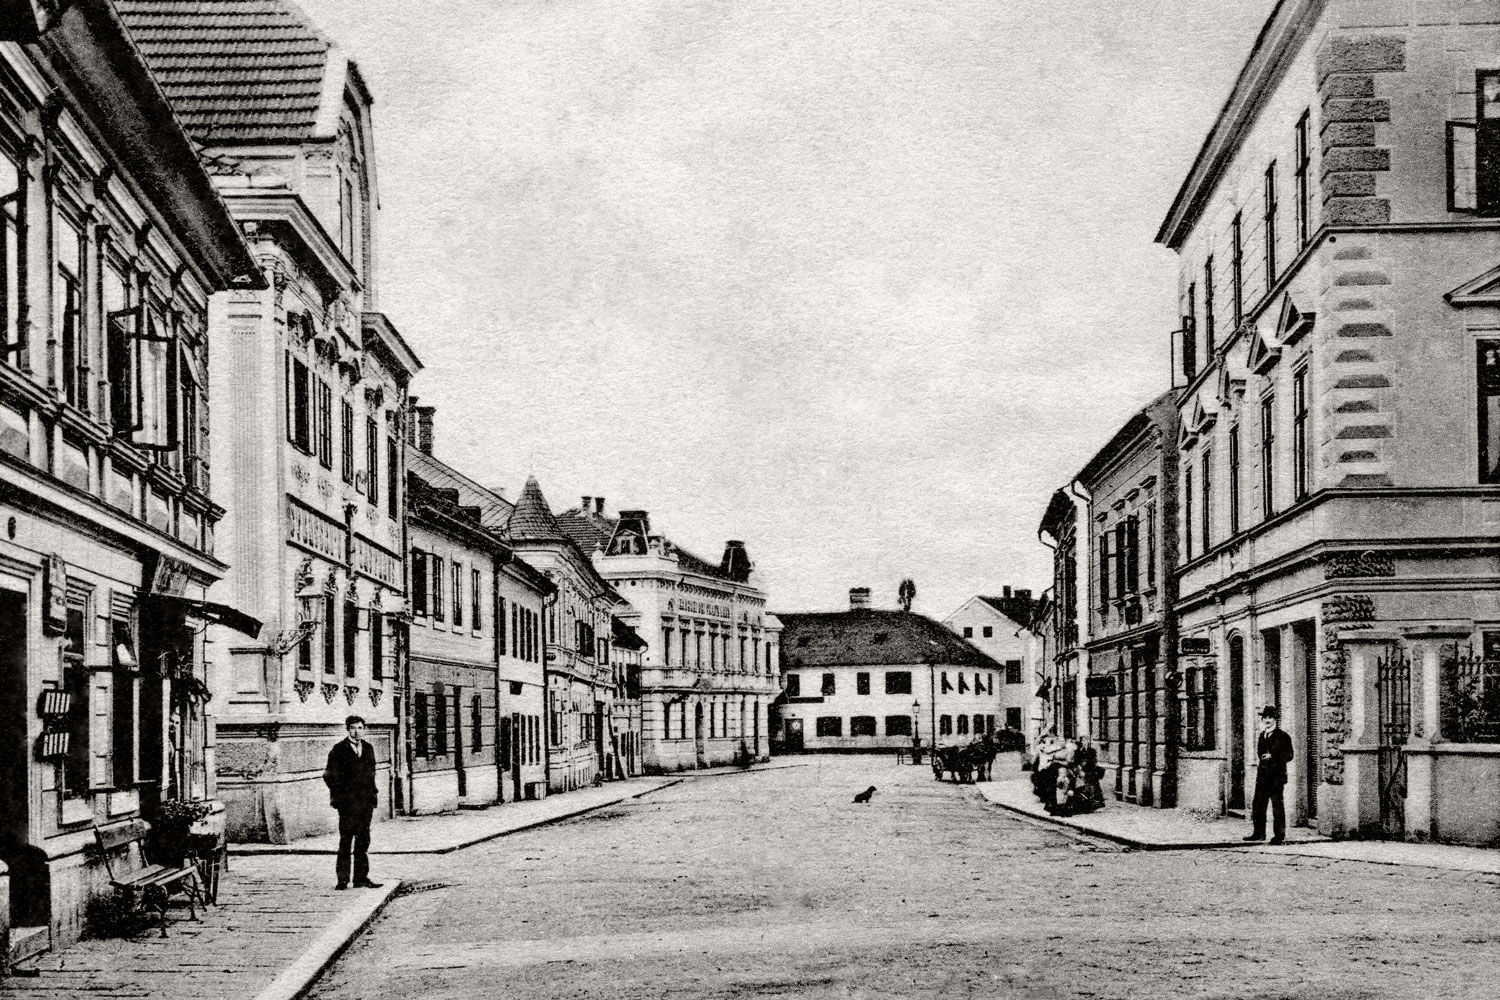 Le « Rossmarkt » (marché au chevaux), place centrale à l’époque de Franz Pöttinger, qui acquiert ici la maison au numéro 25.